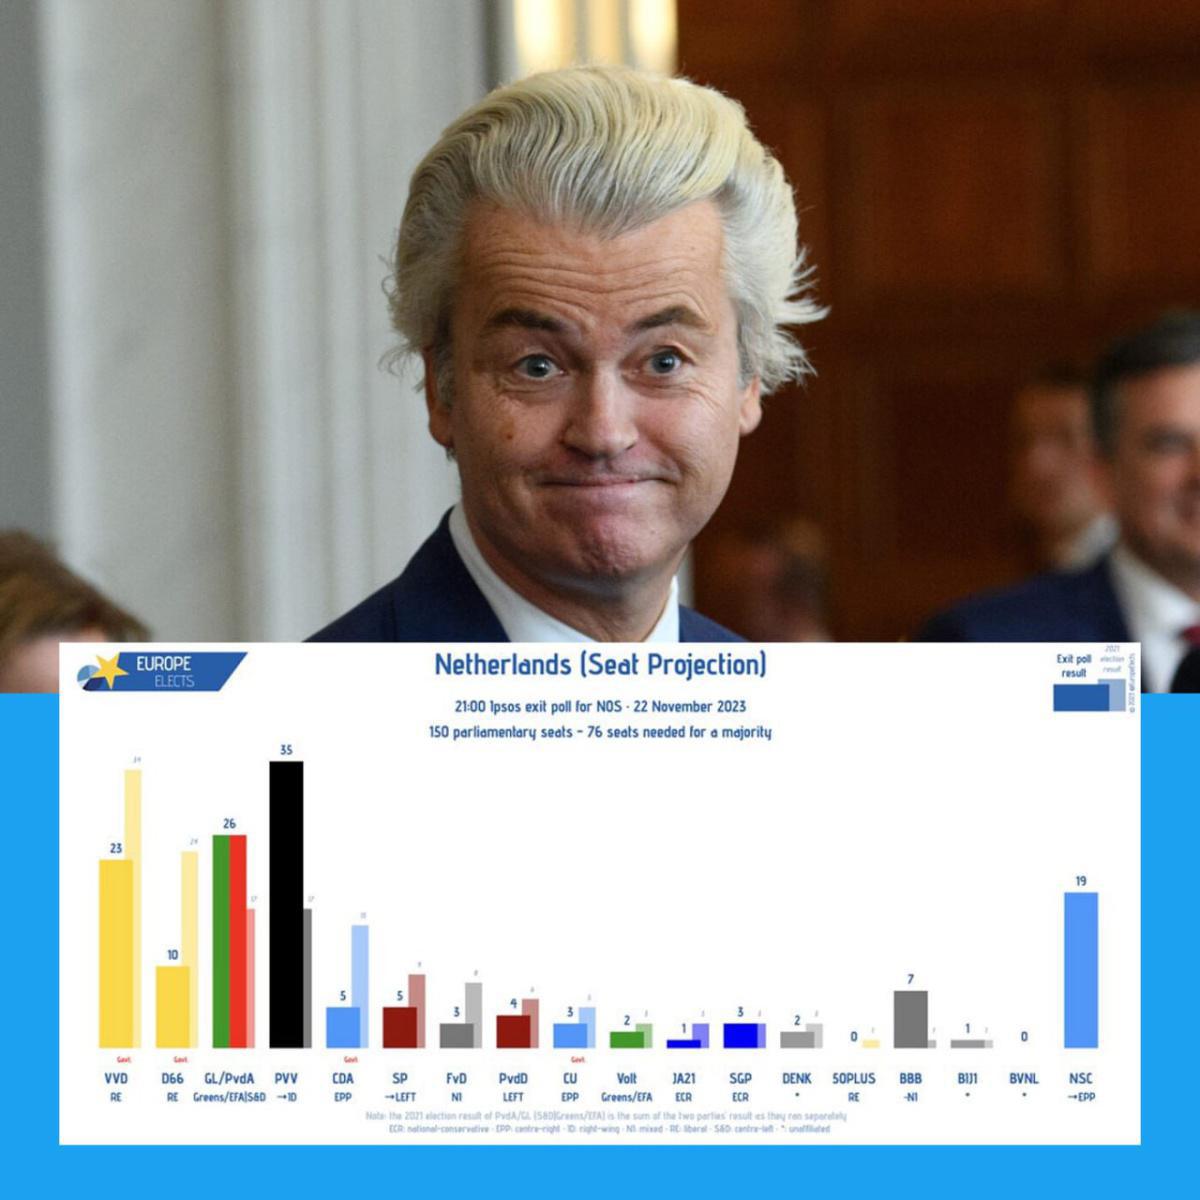 Victoire de Geert Wilders : Un changement dans le paysage politique européen ?